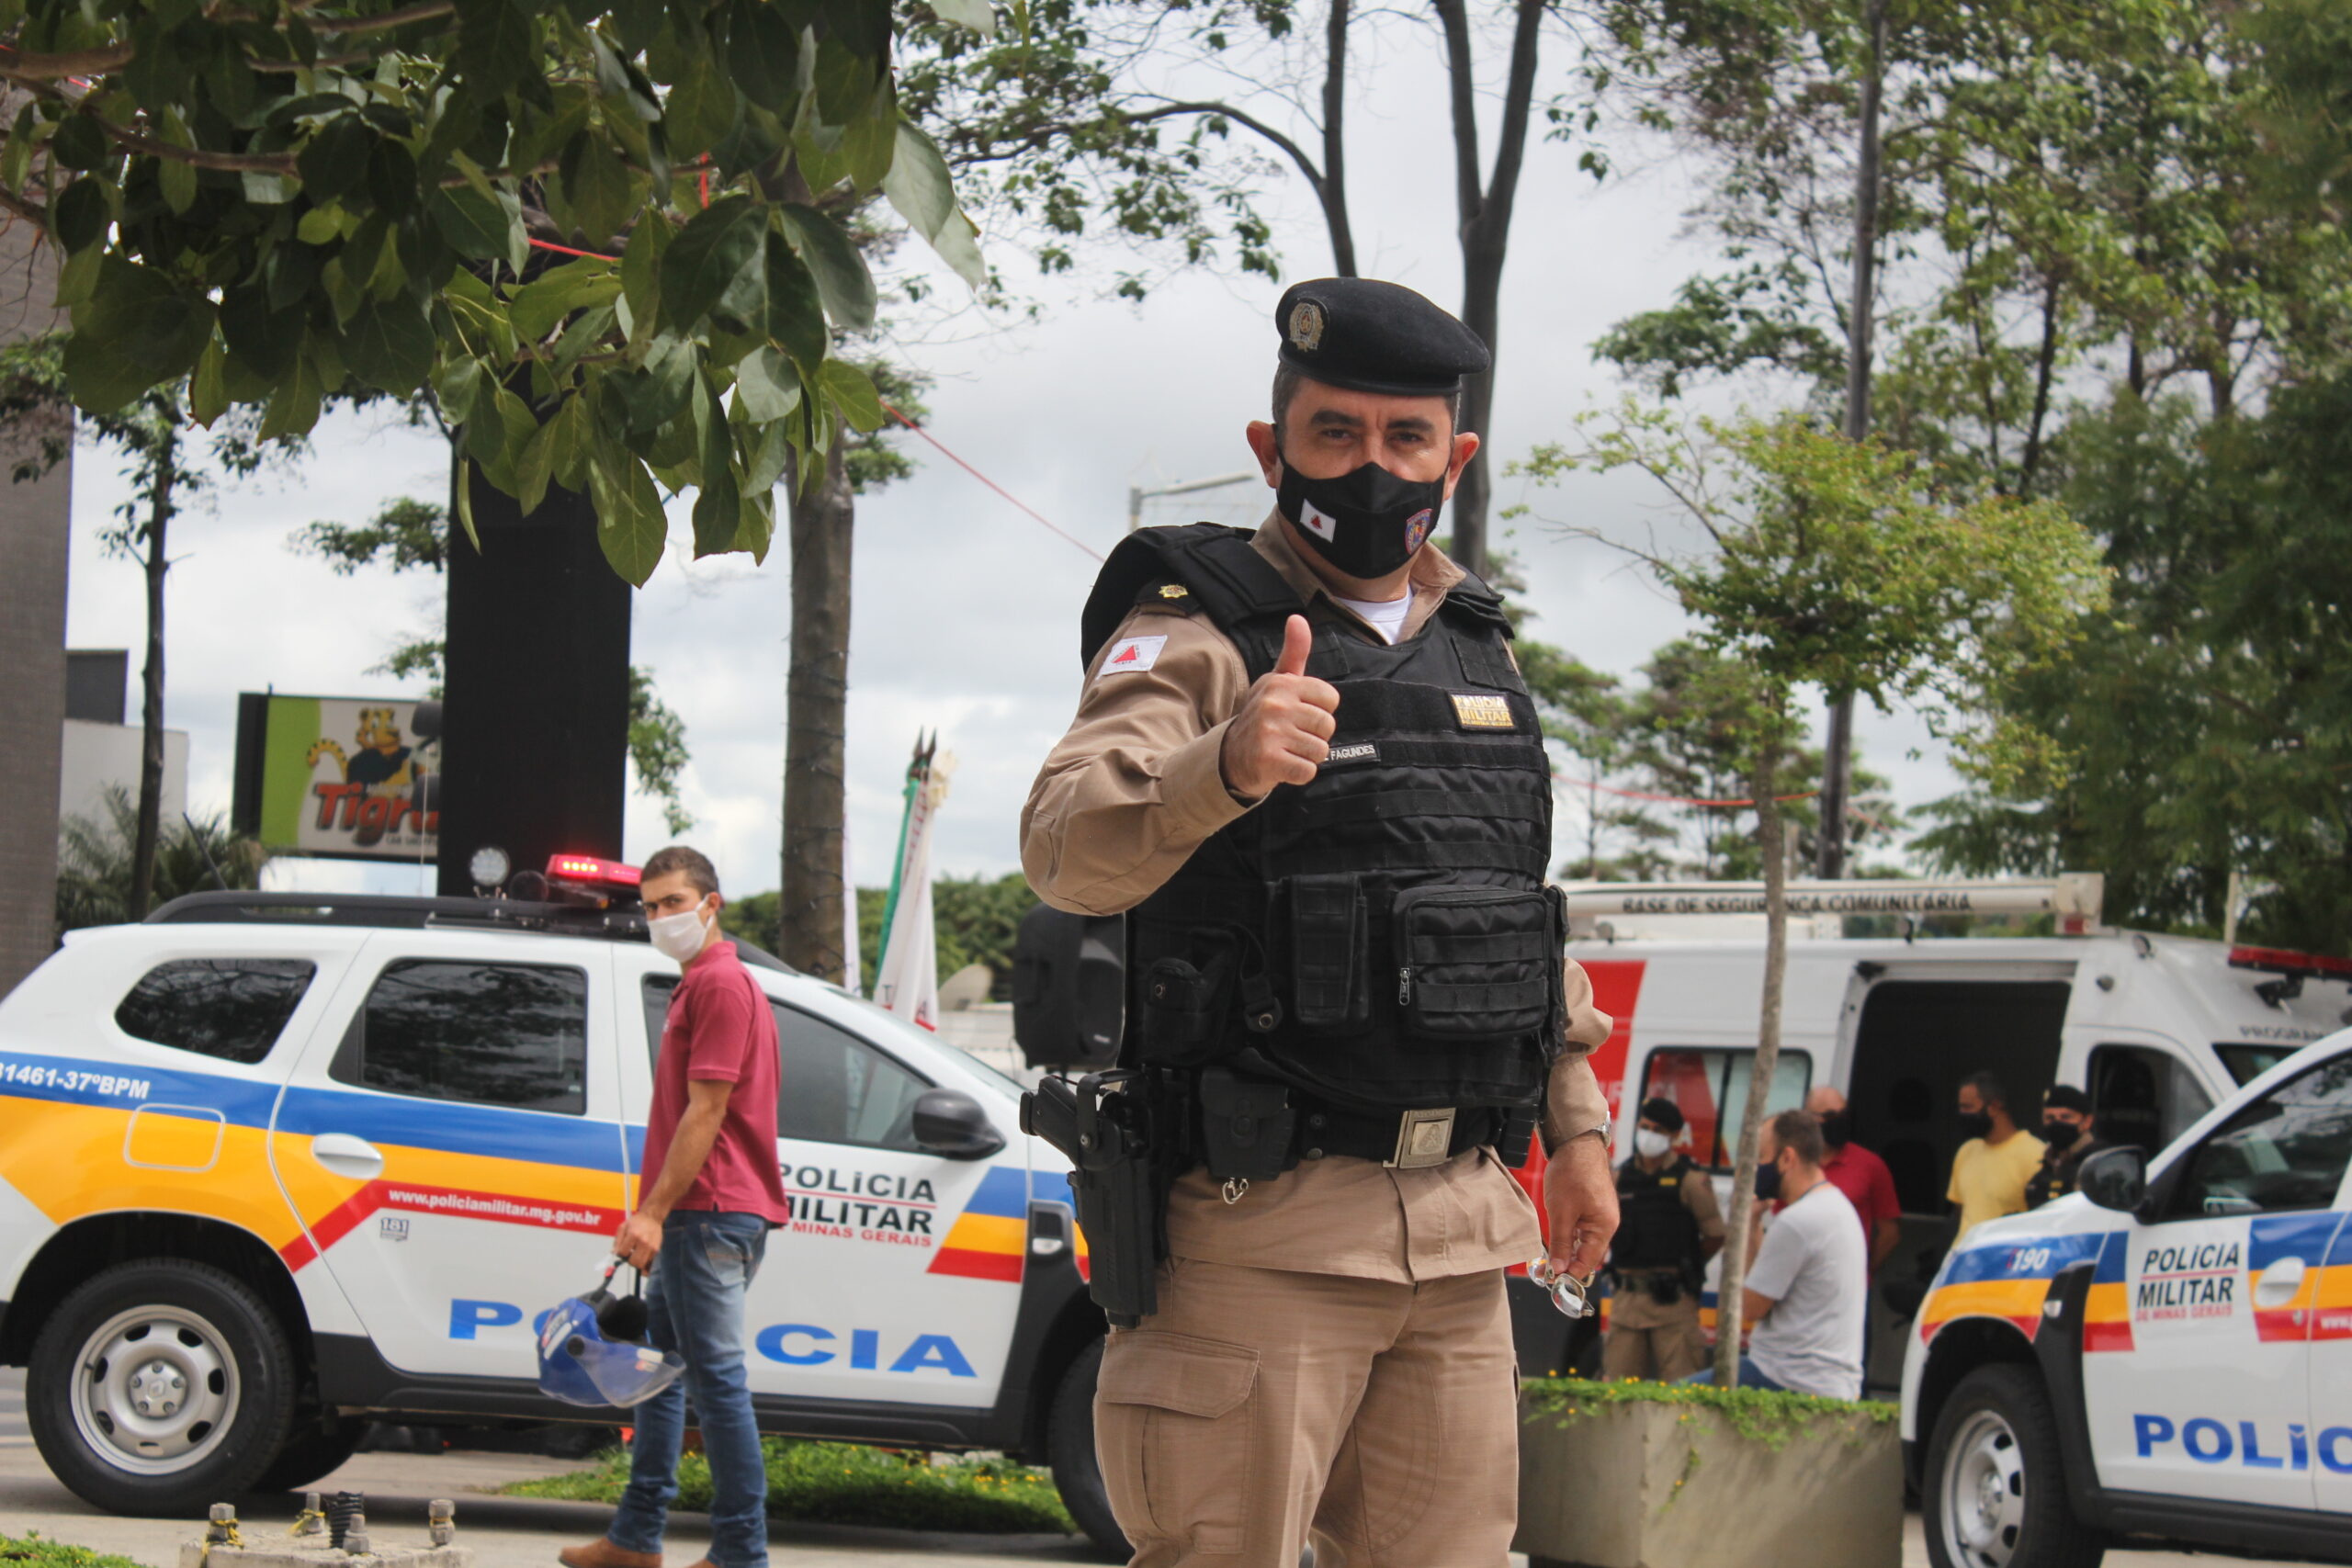 Araxá e região ganham em segurança com mais 2 viaturas para Polícia Militar